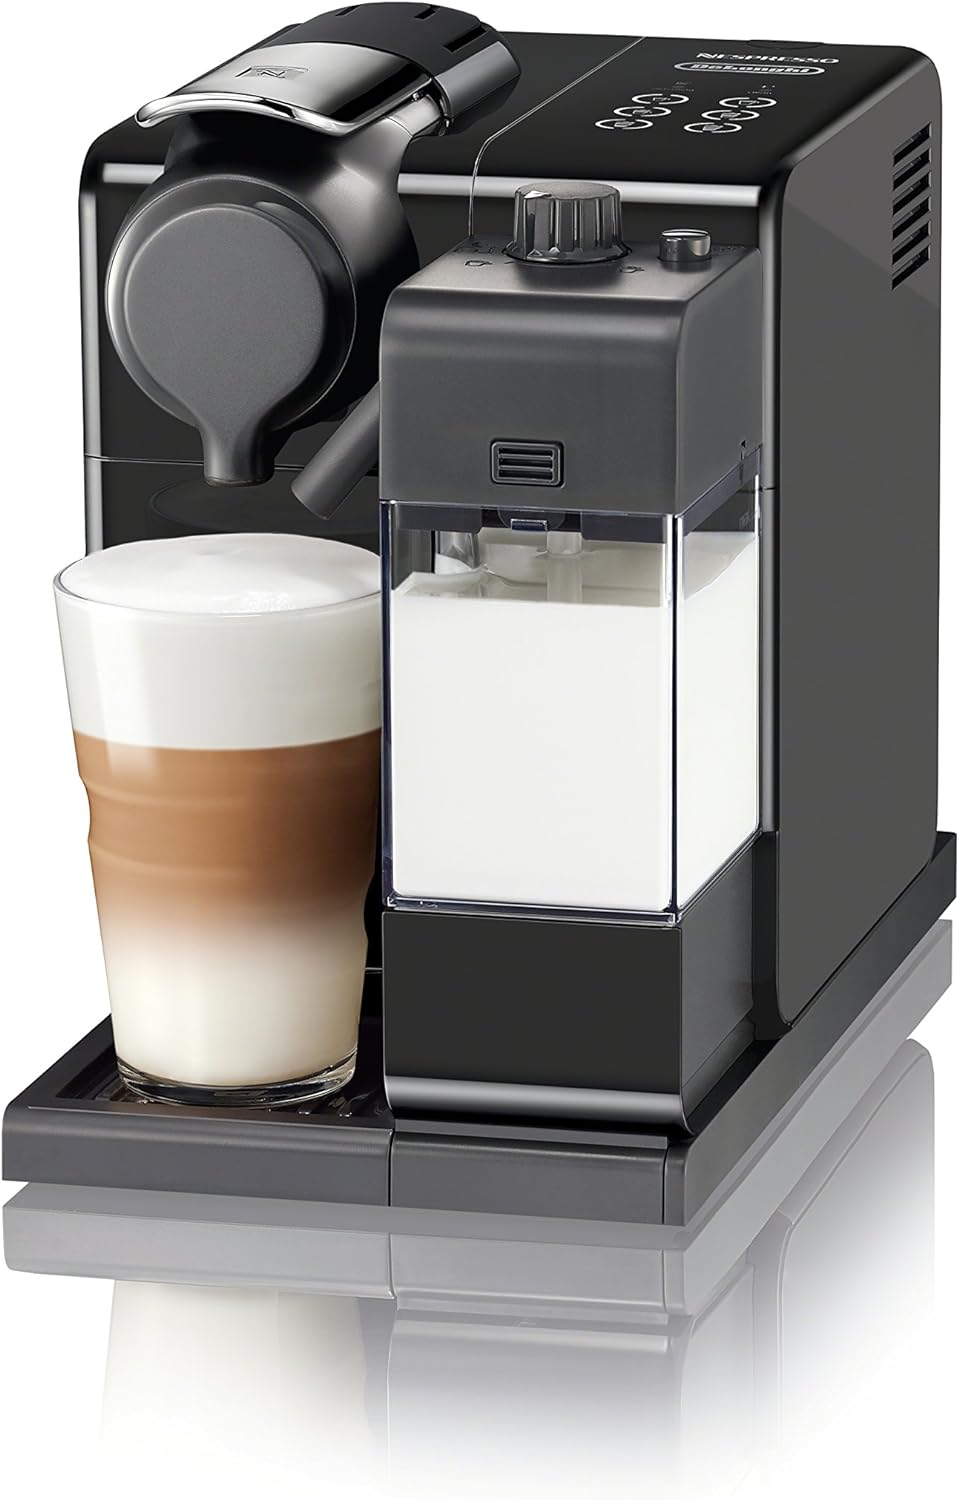 Nespresso Lattissima Touch Espresso Machine Review